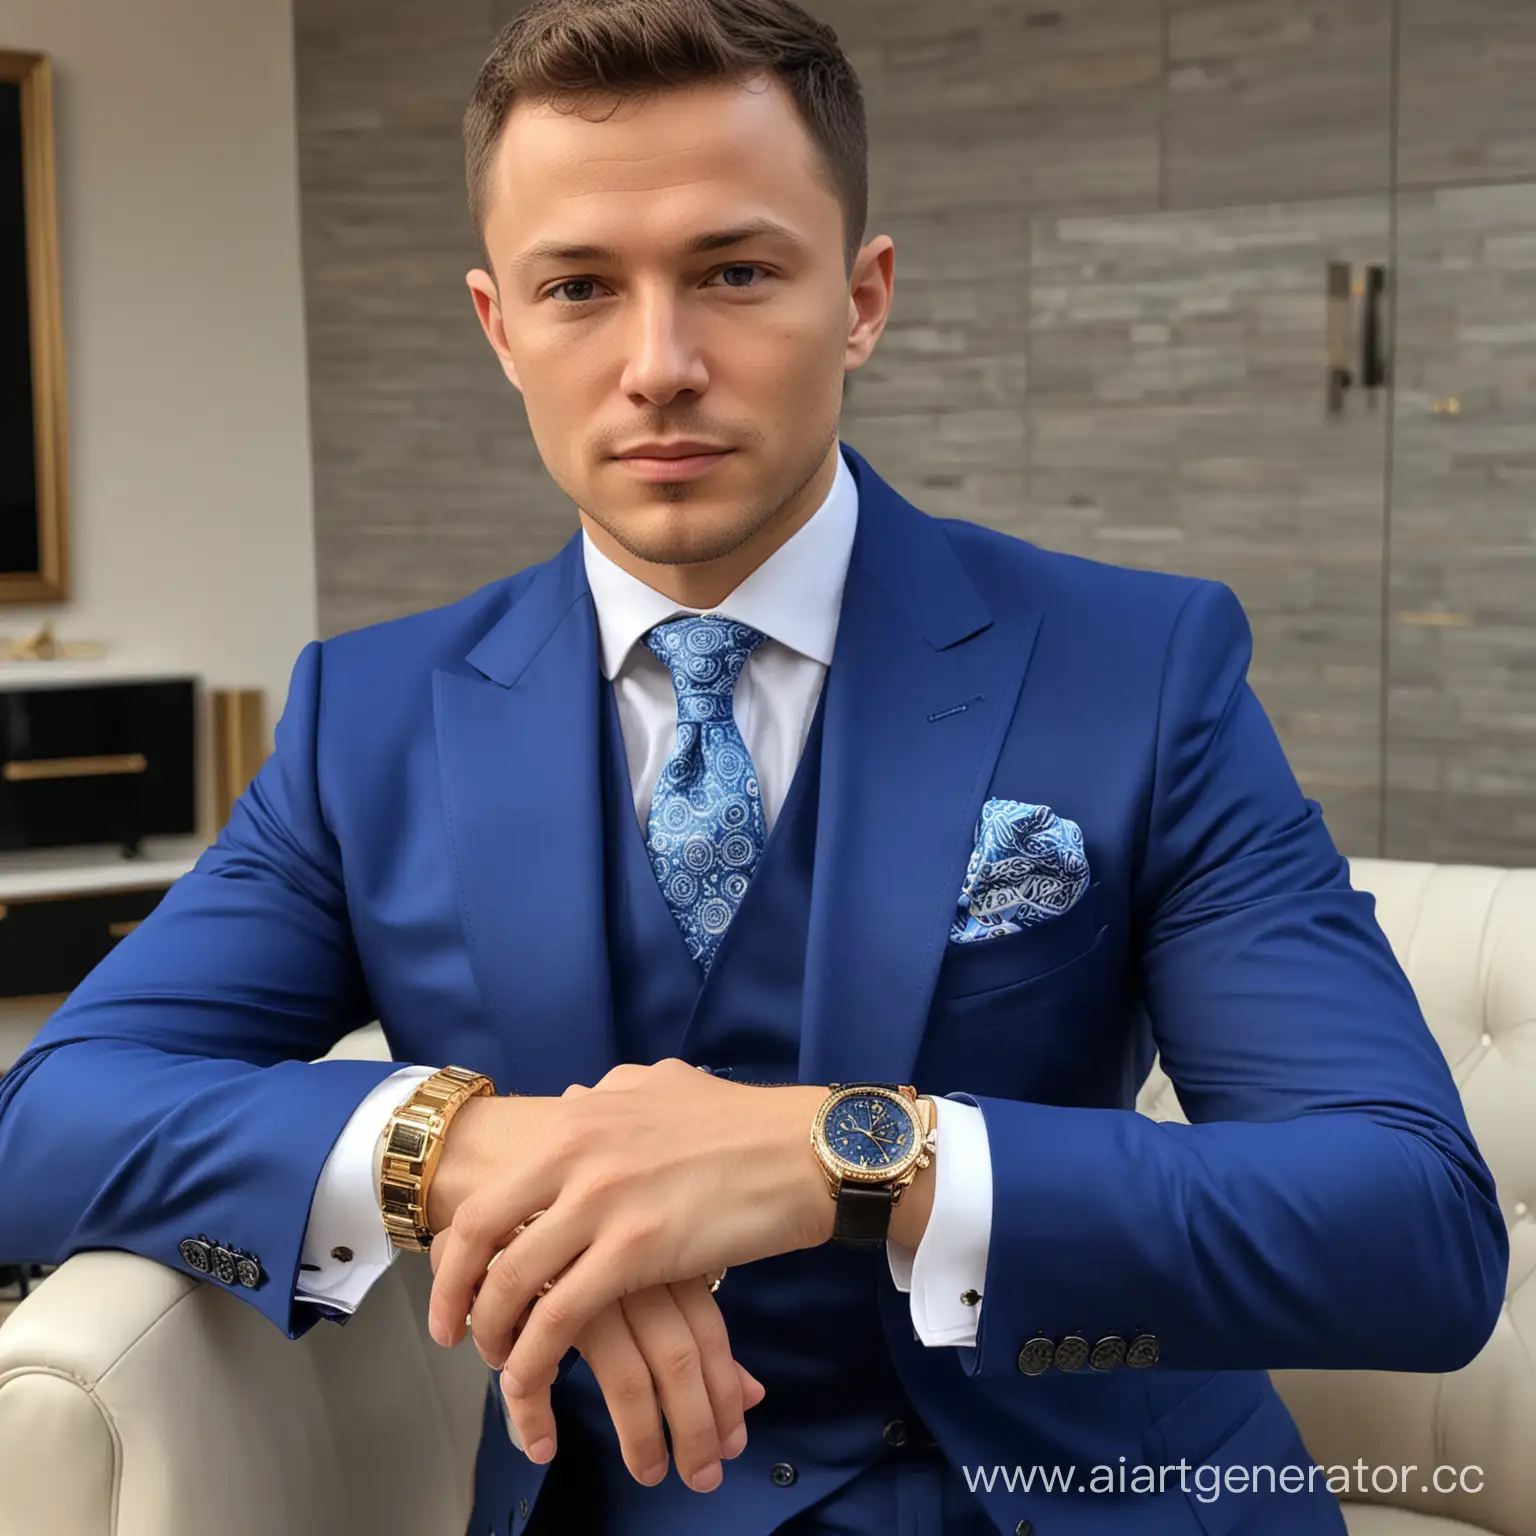 Макс Максбетов самый богатый криптоинсвестер  в мире, полное телосложение, синий дорогой костюм, несколько очень дорогиз часов на руке, шикарная дорогая прическа